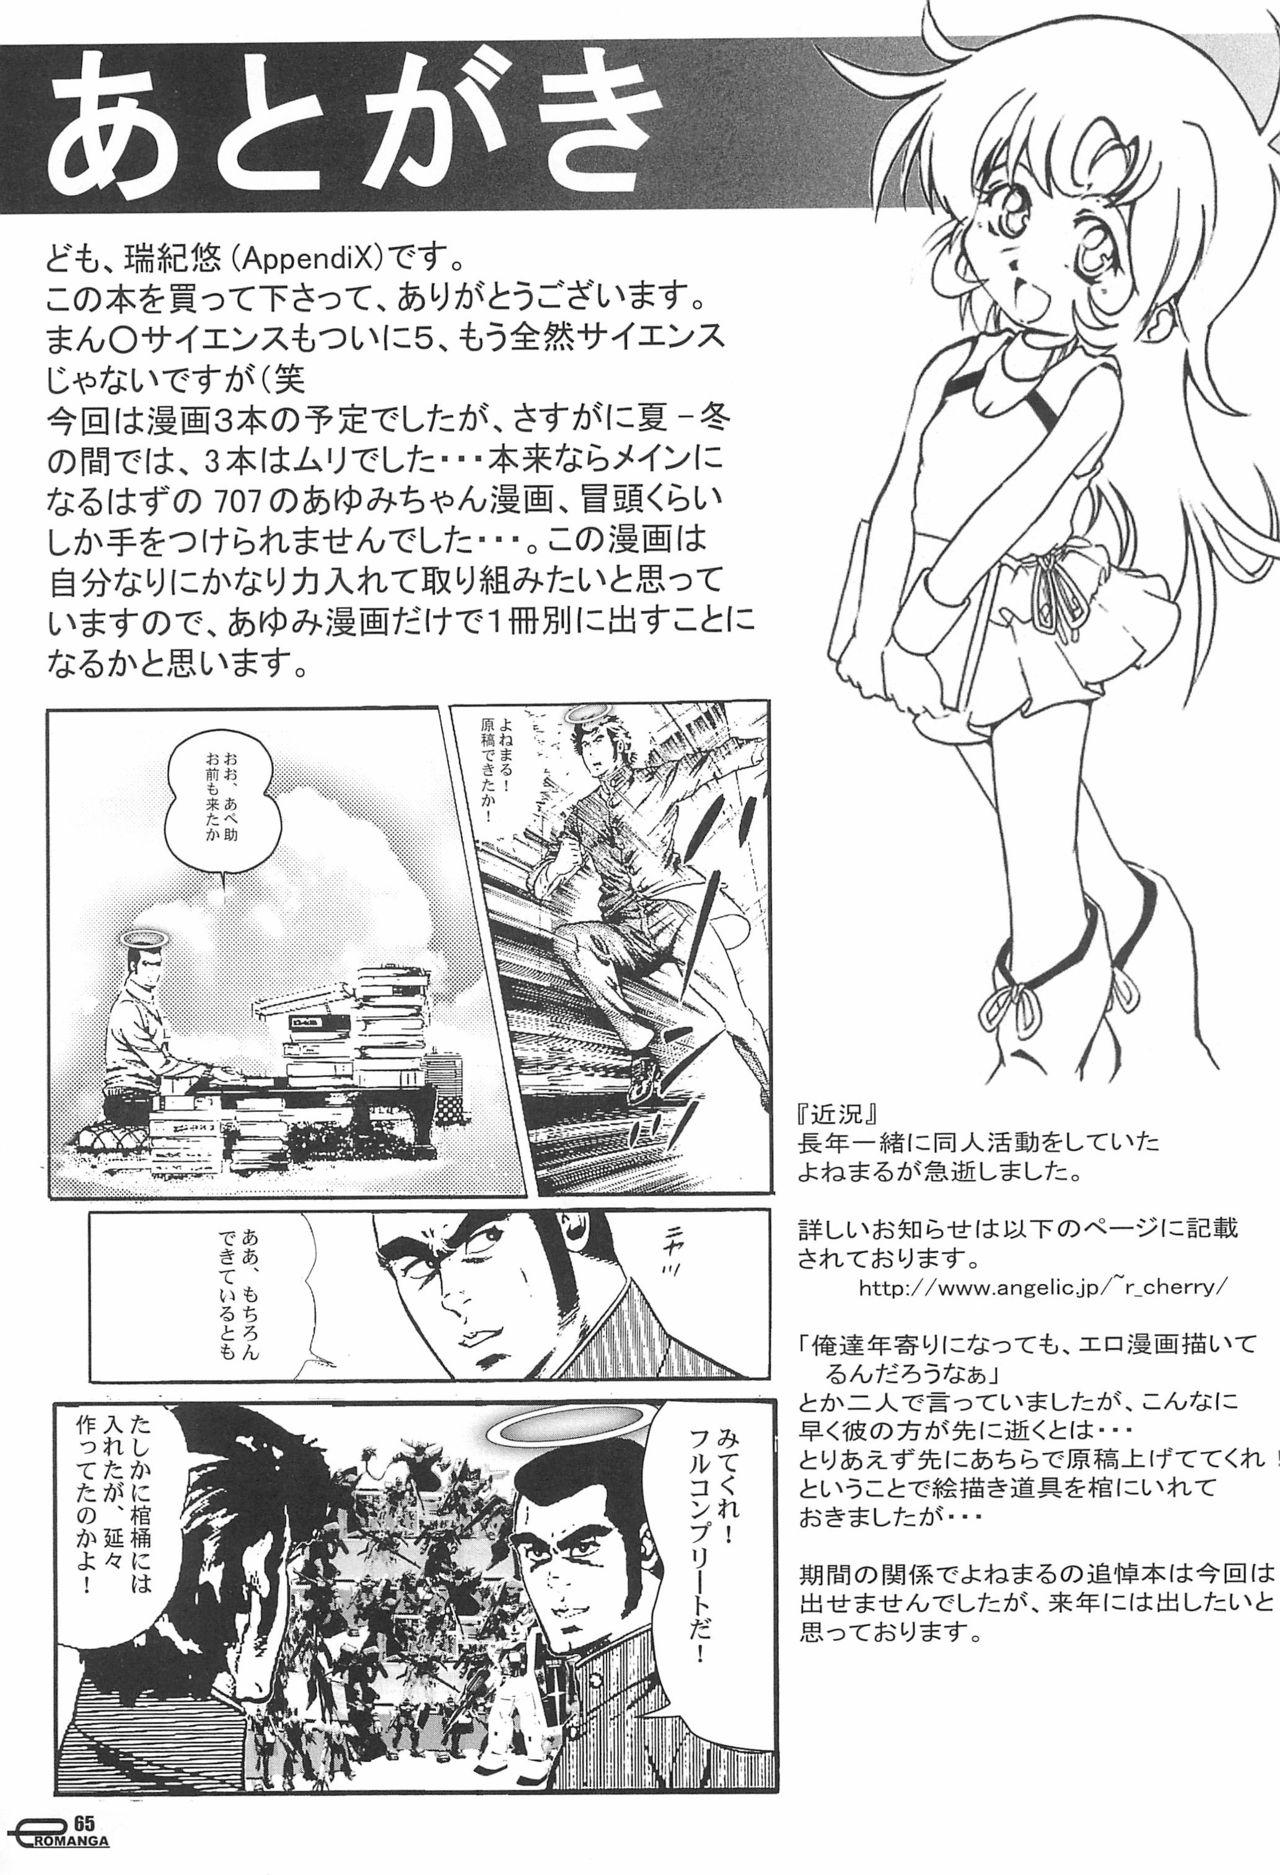 Manga Science 5 65